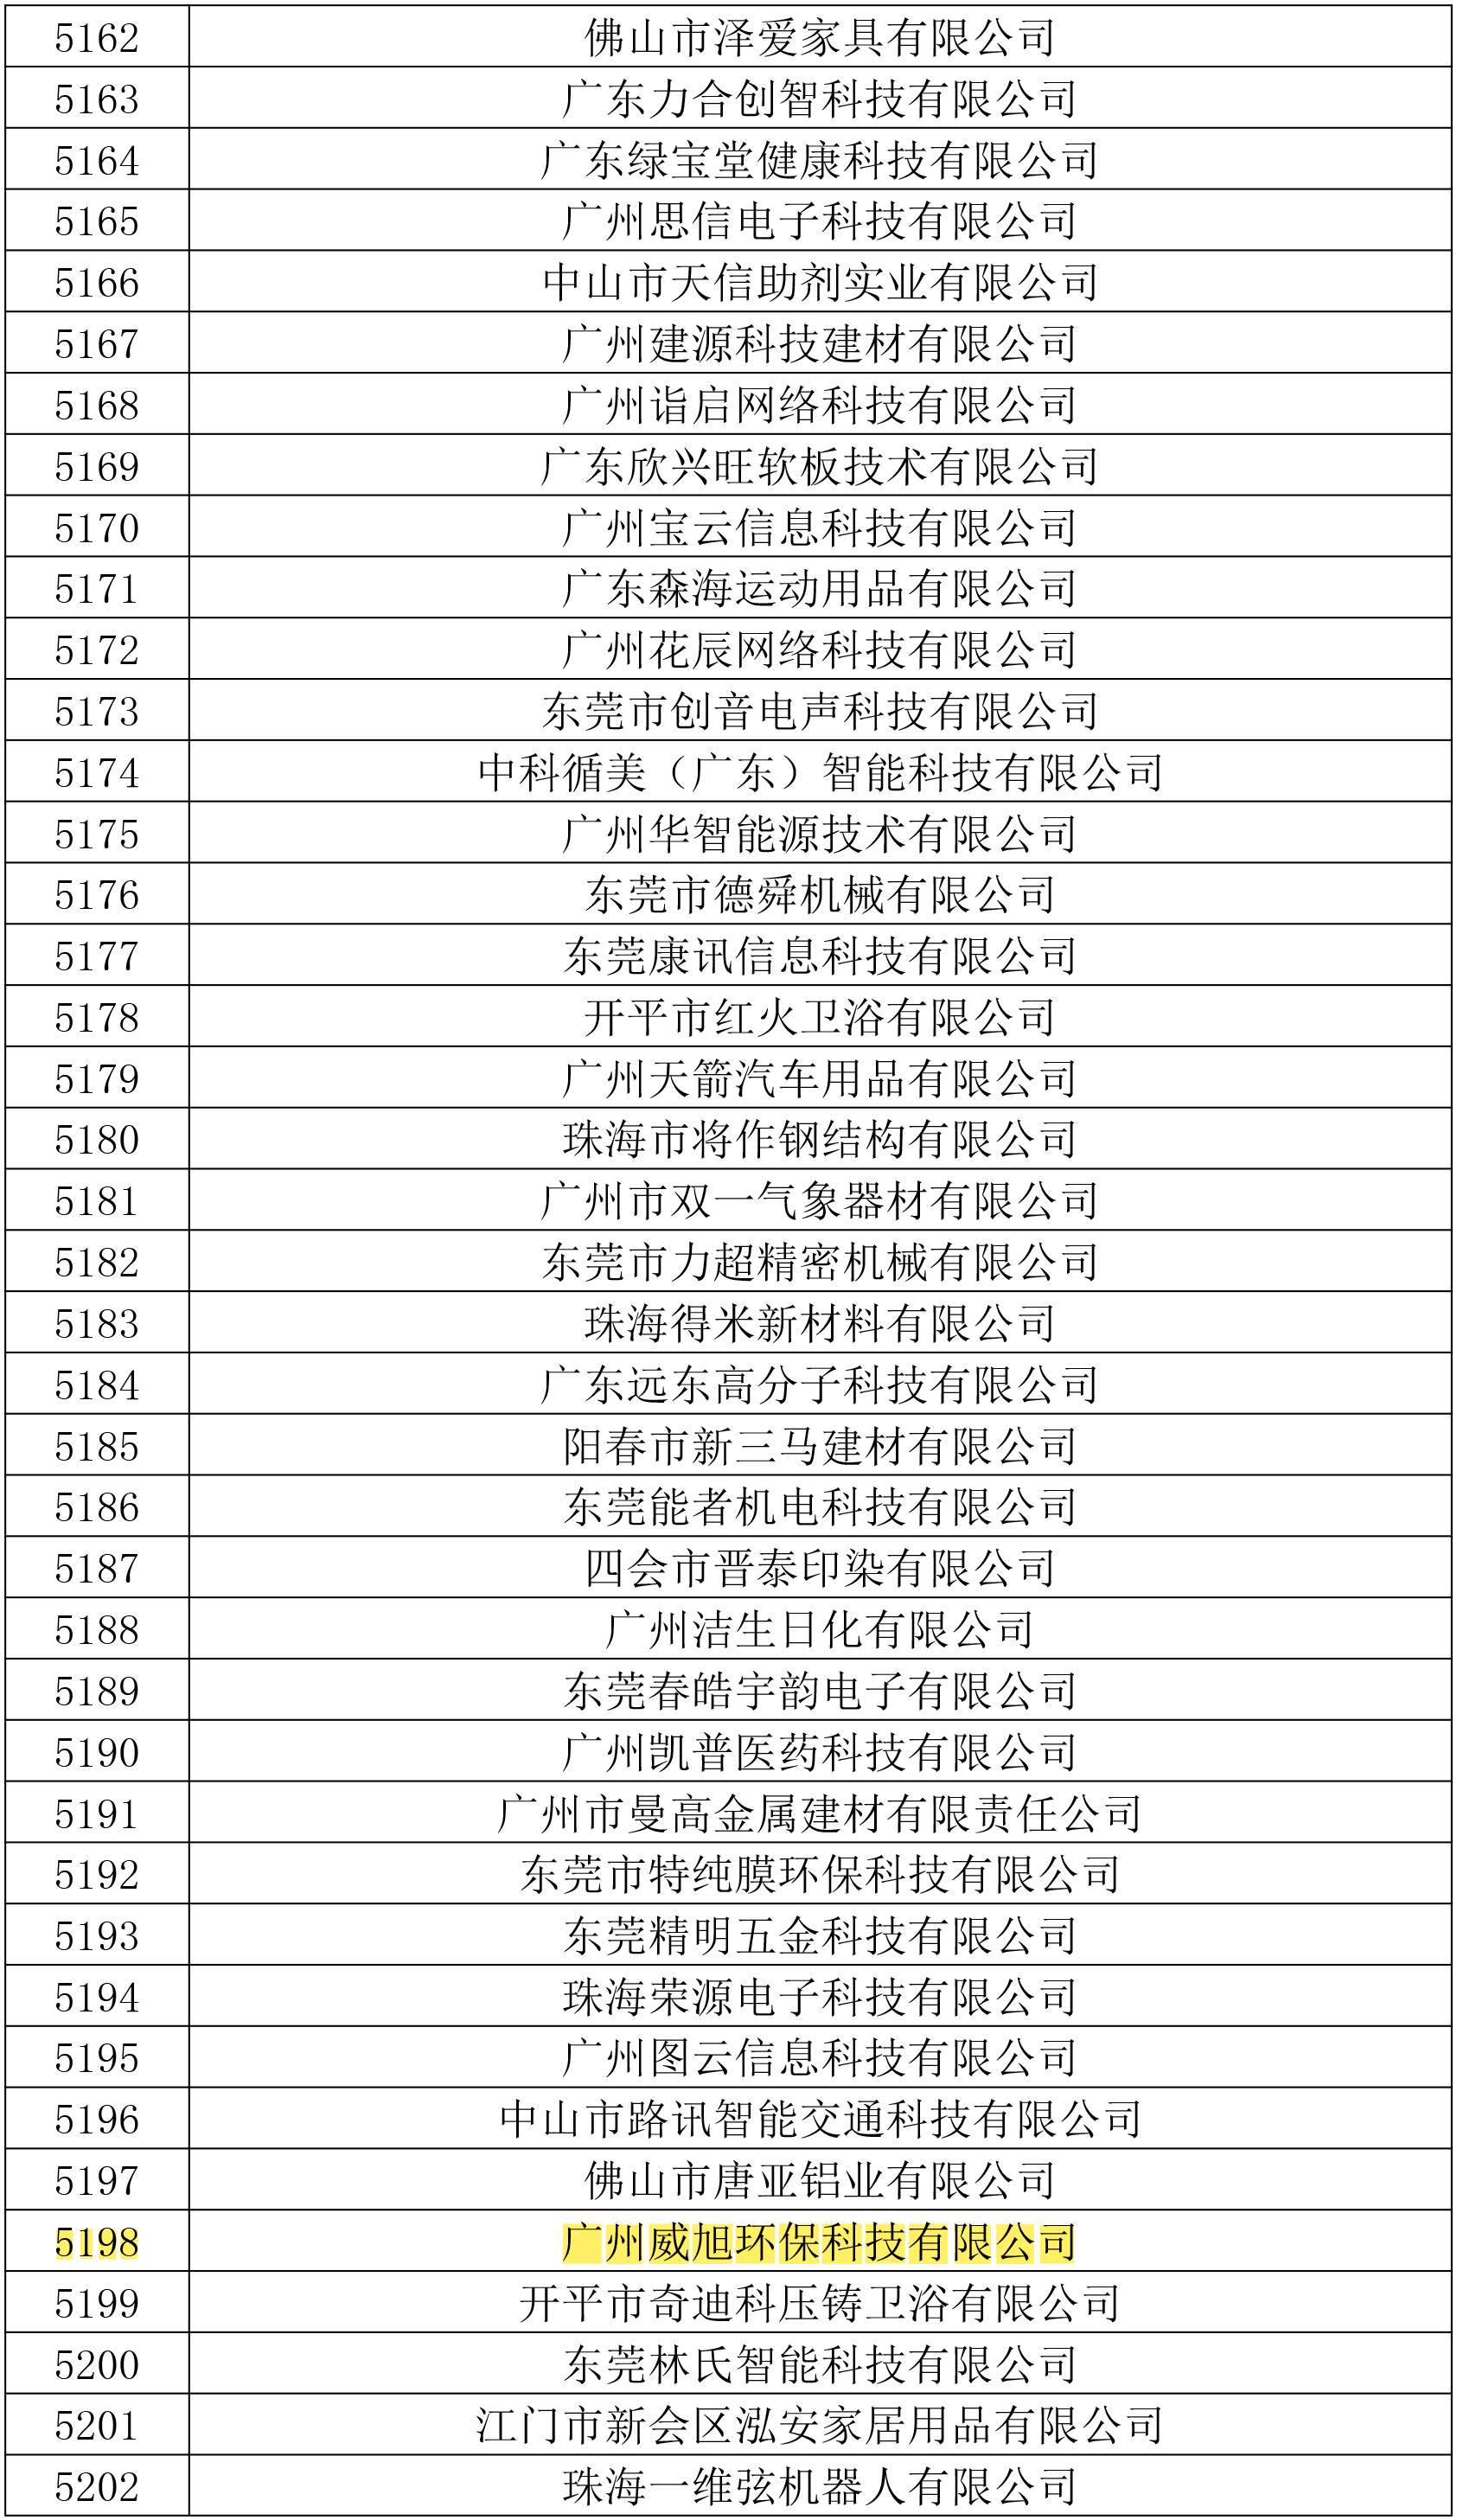 第三批广东高新技术企业公示名单